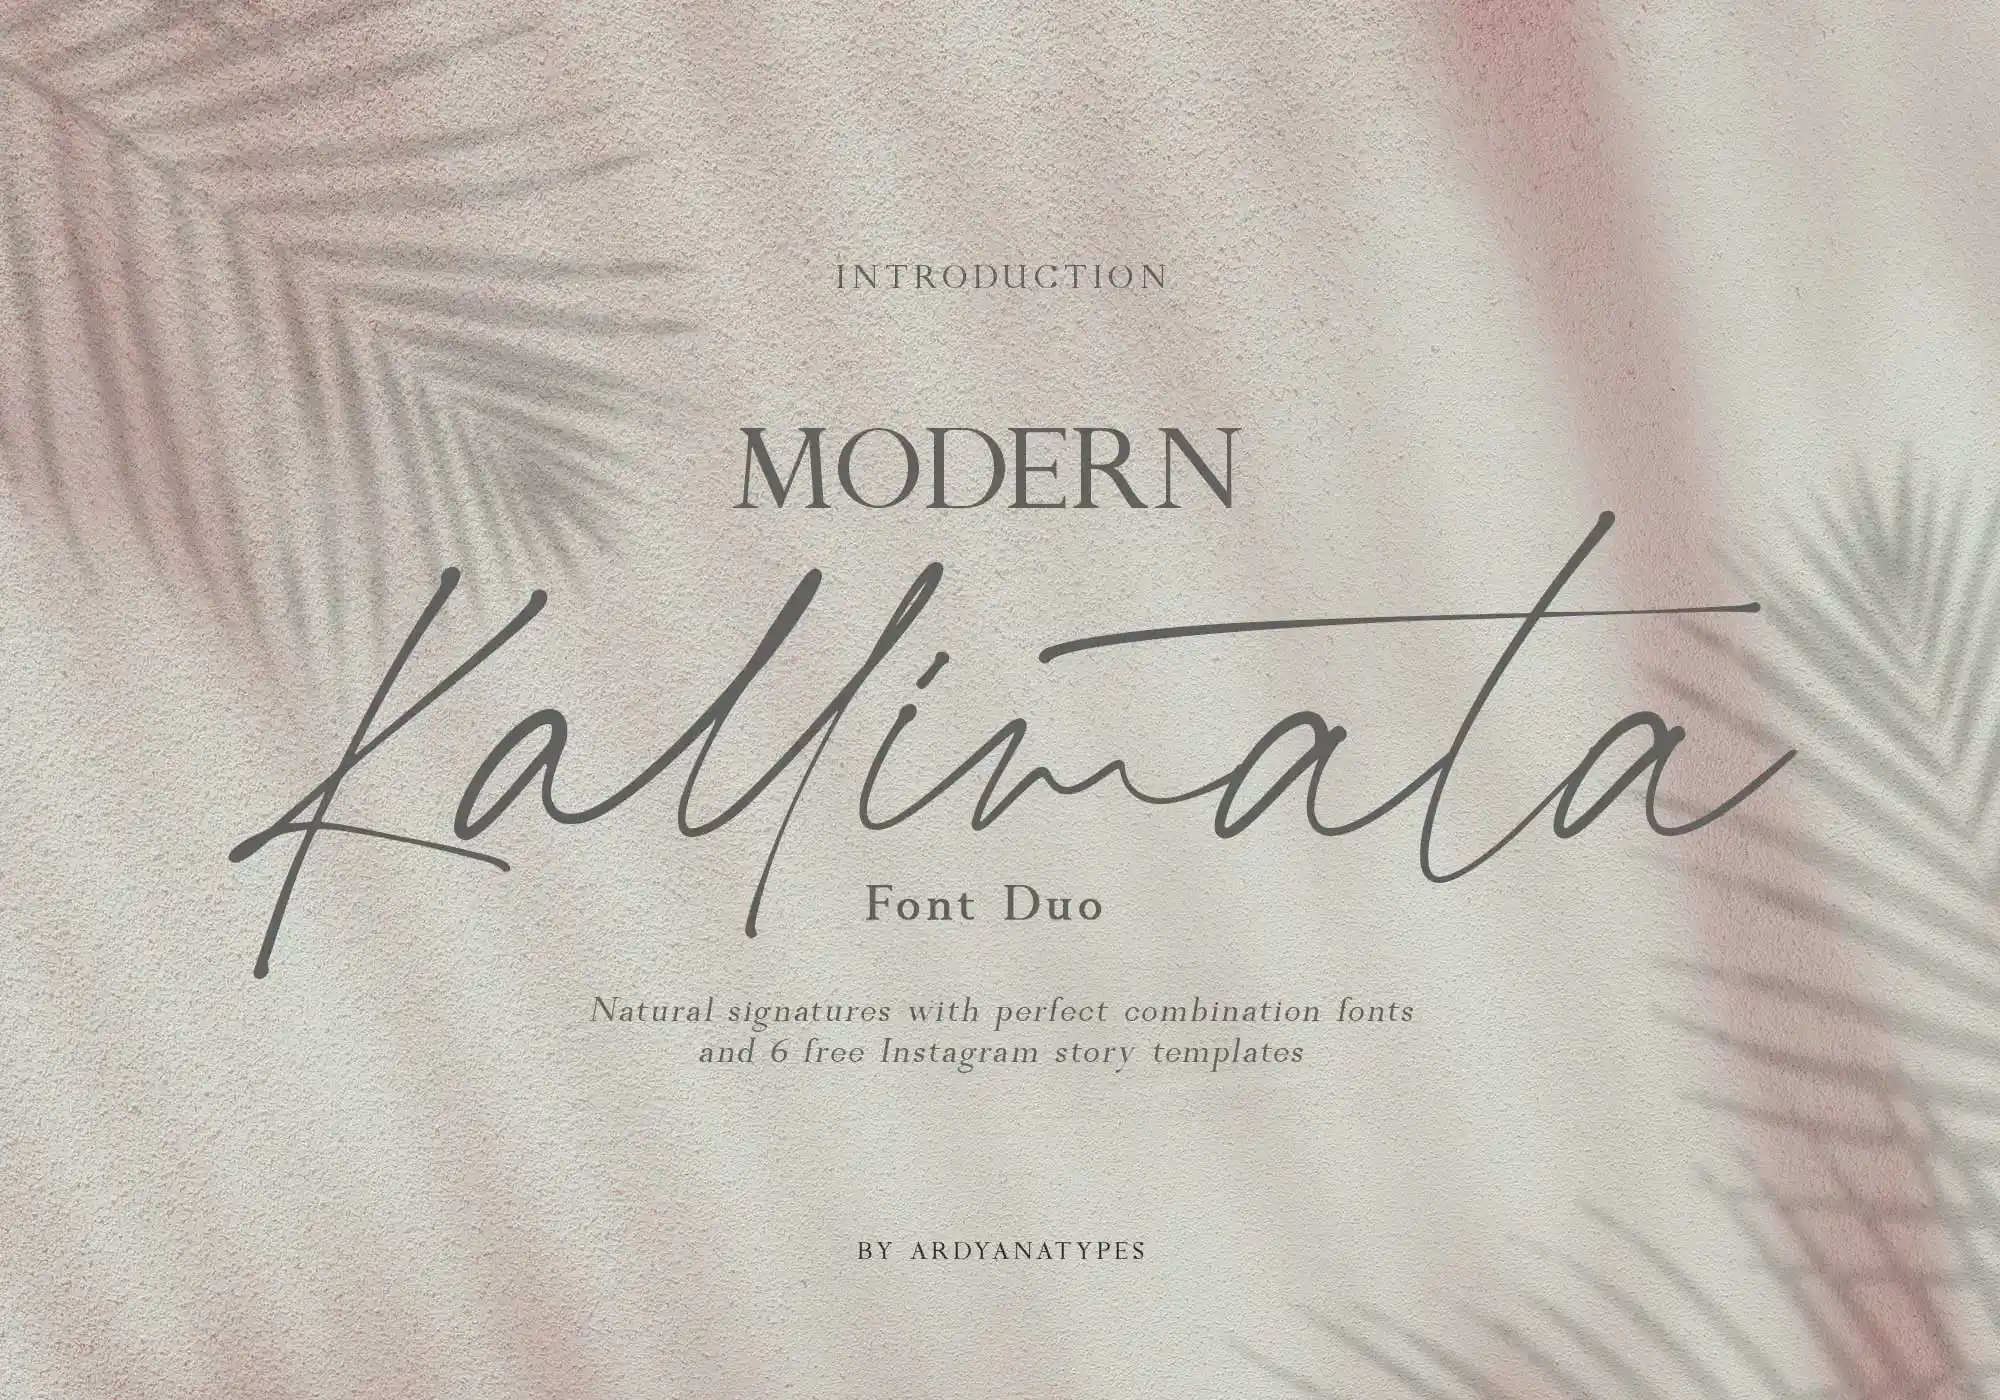 Modern Kallimata